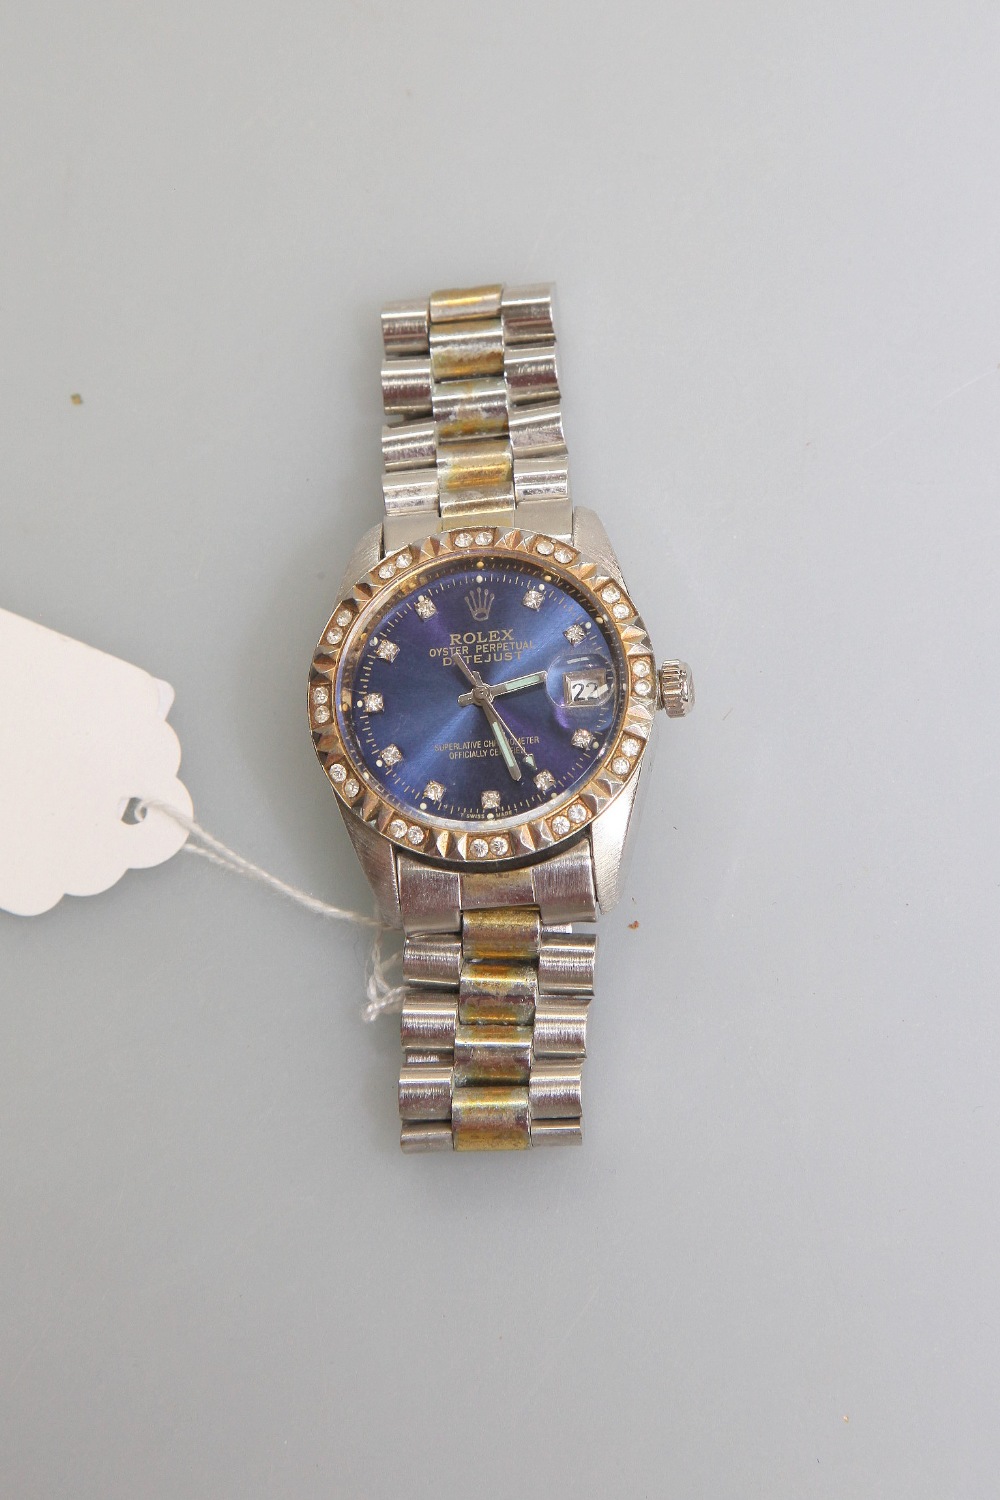 A reproduction Rolex wristwatch